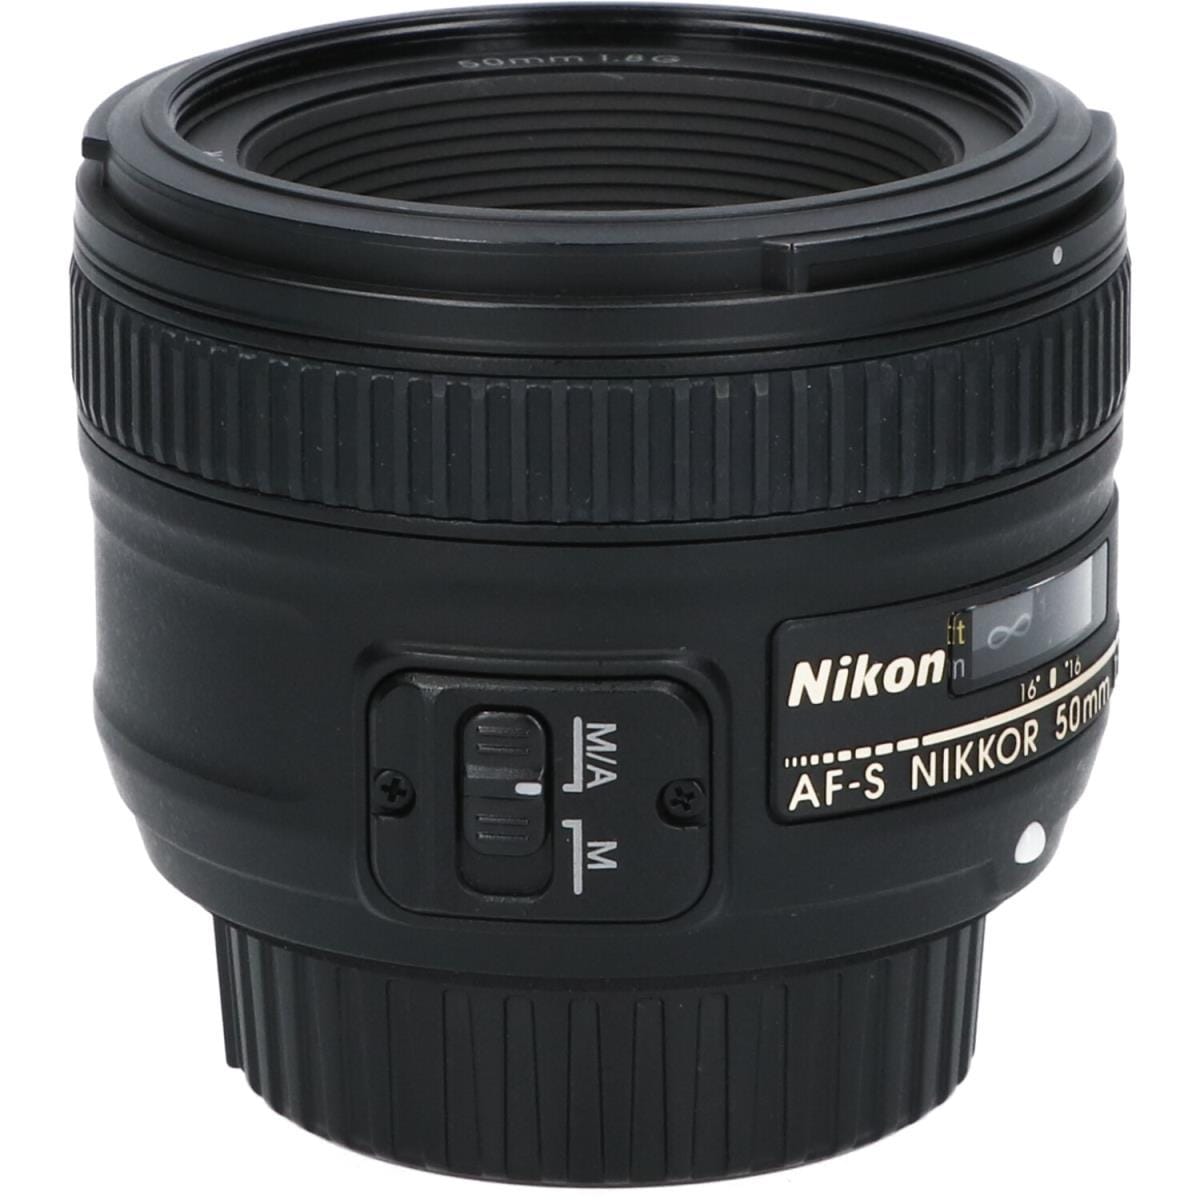 Nikon AF-S 50mm NIKKOR F1.8G